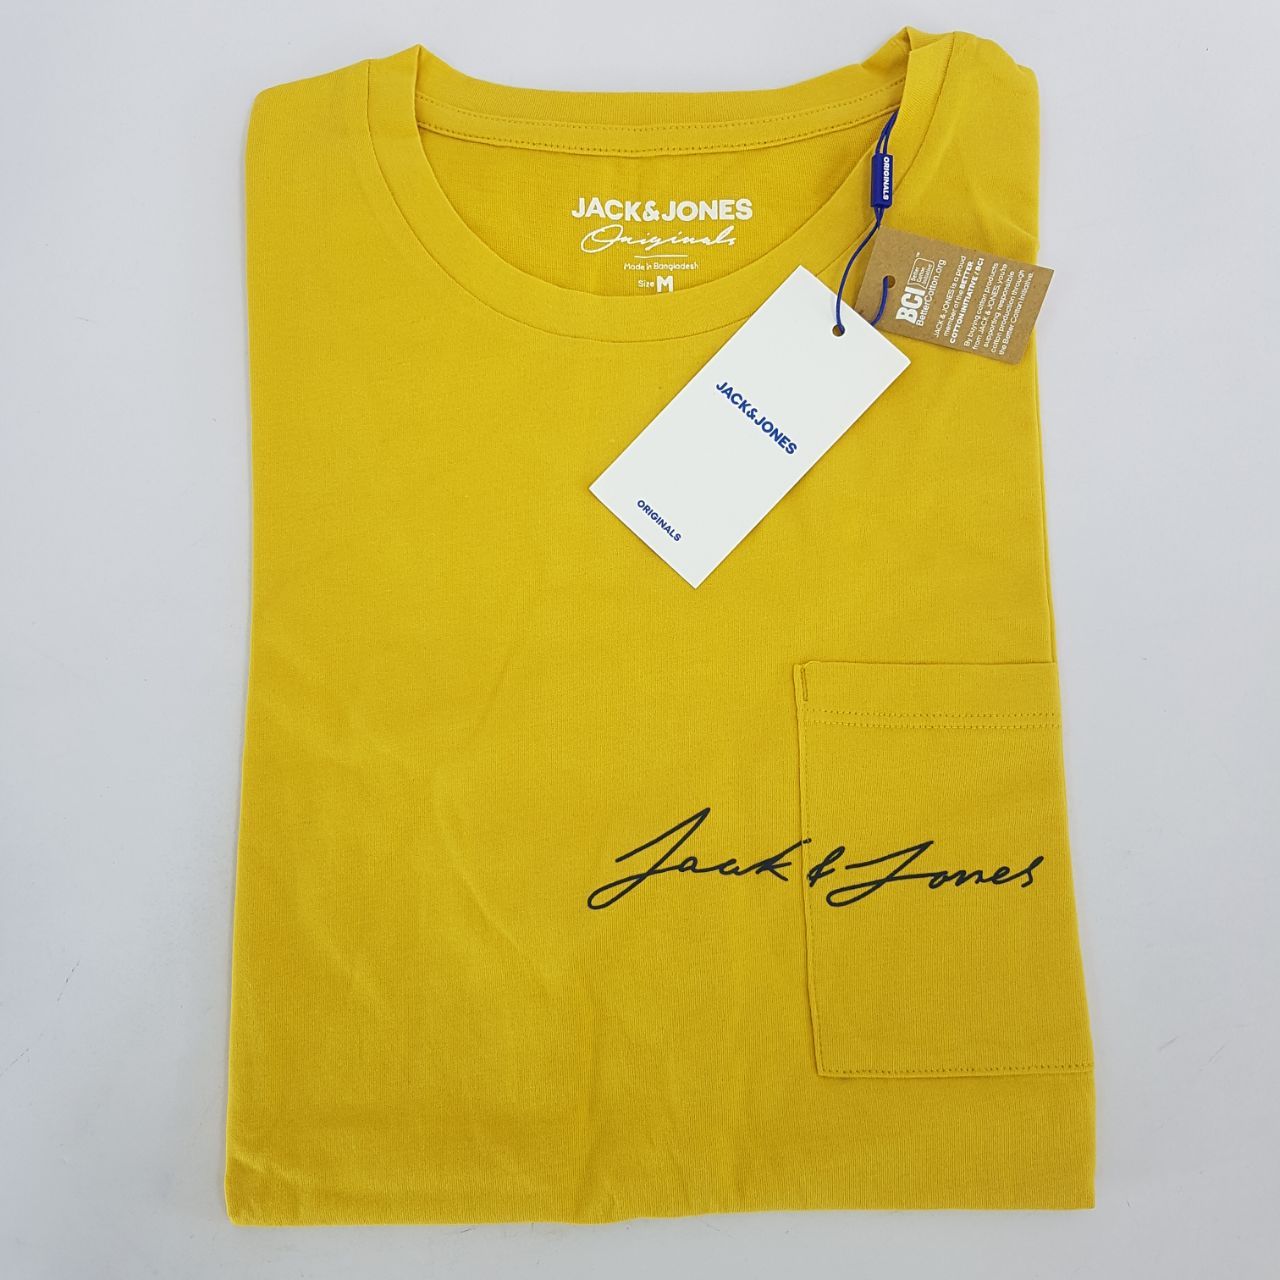 تی شرت آستین کوتاه مردانه جک اند جونز مدل ساده جیب دار کد Olympus12180662 رنگ زرد -  - 3